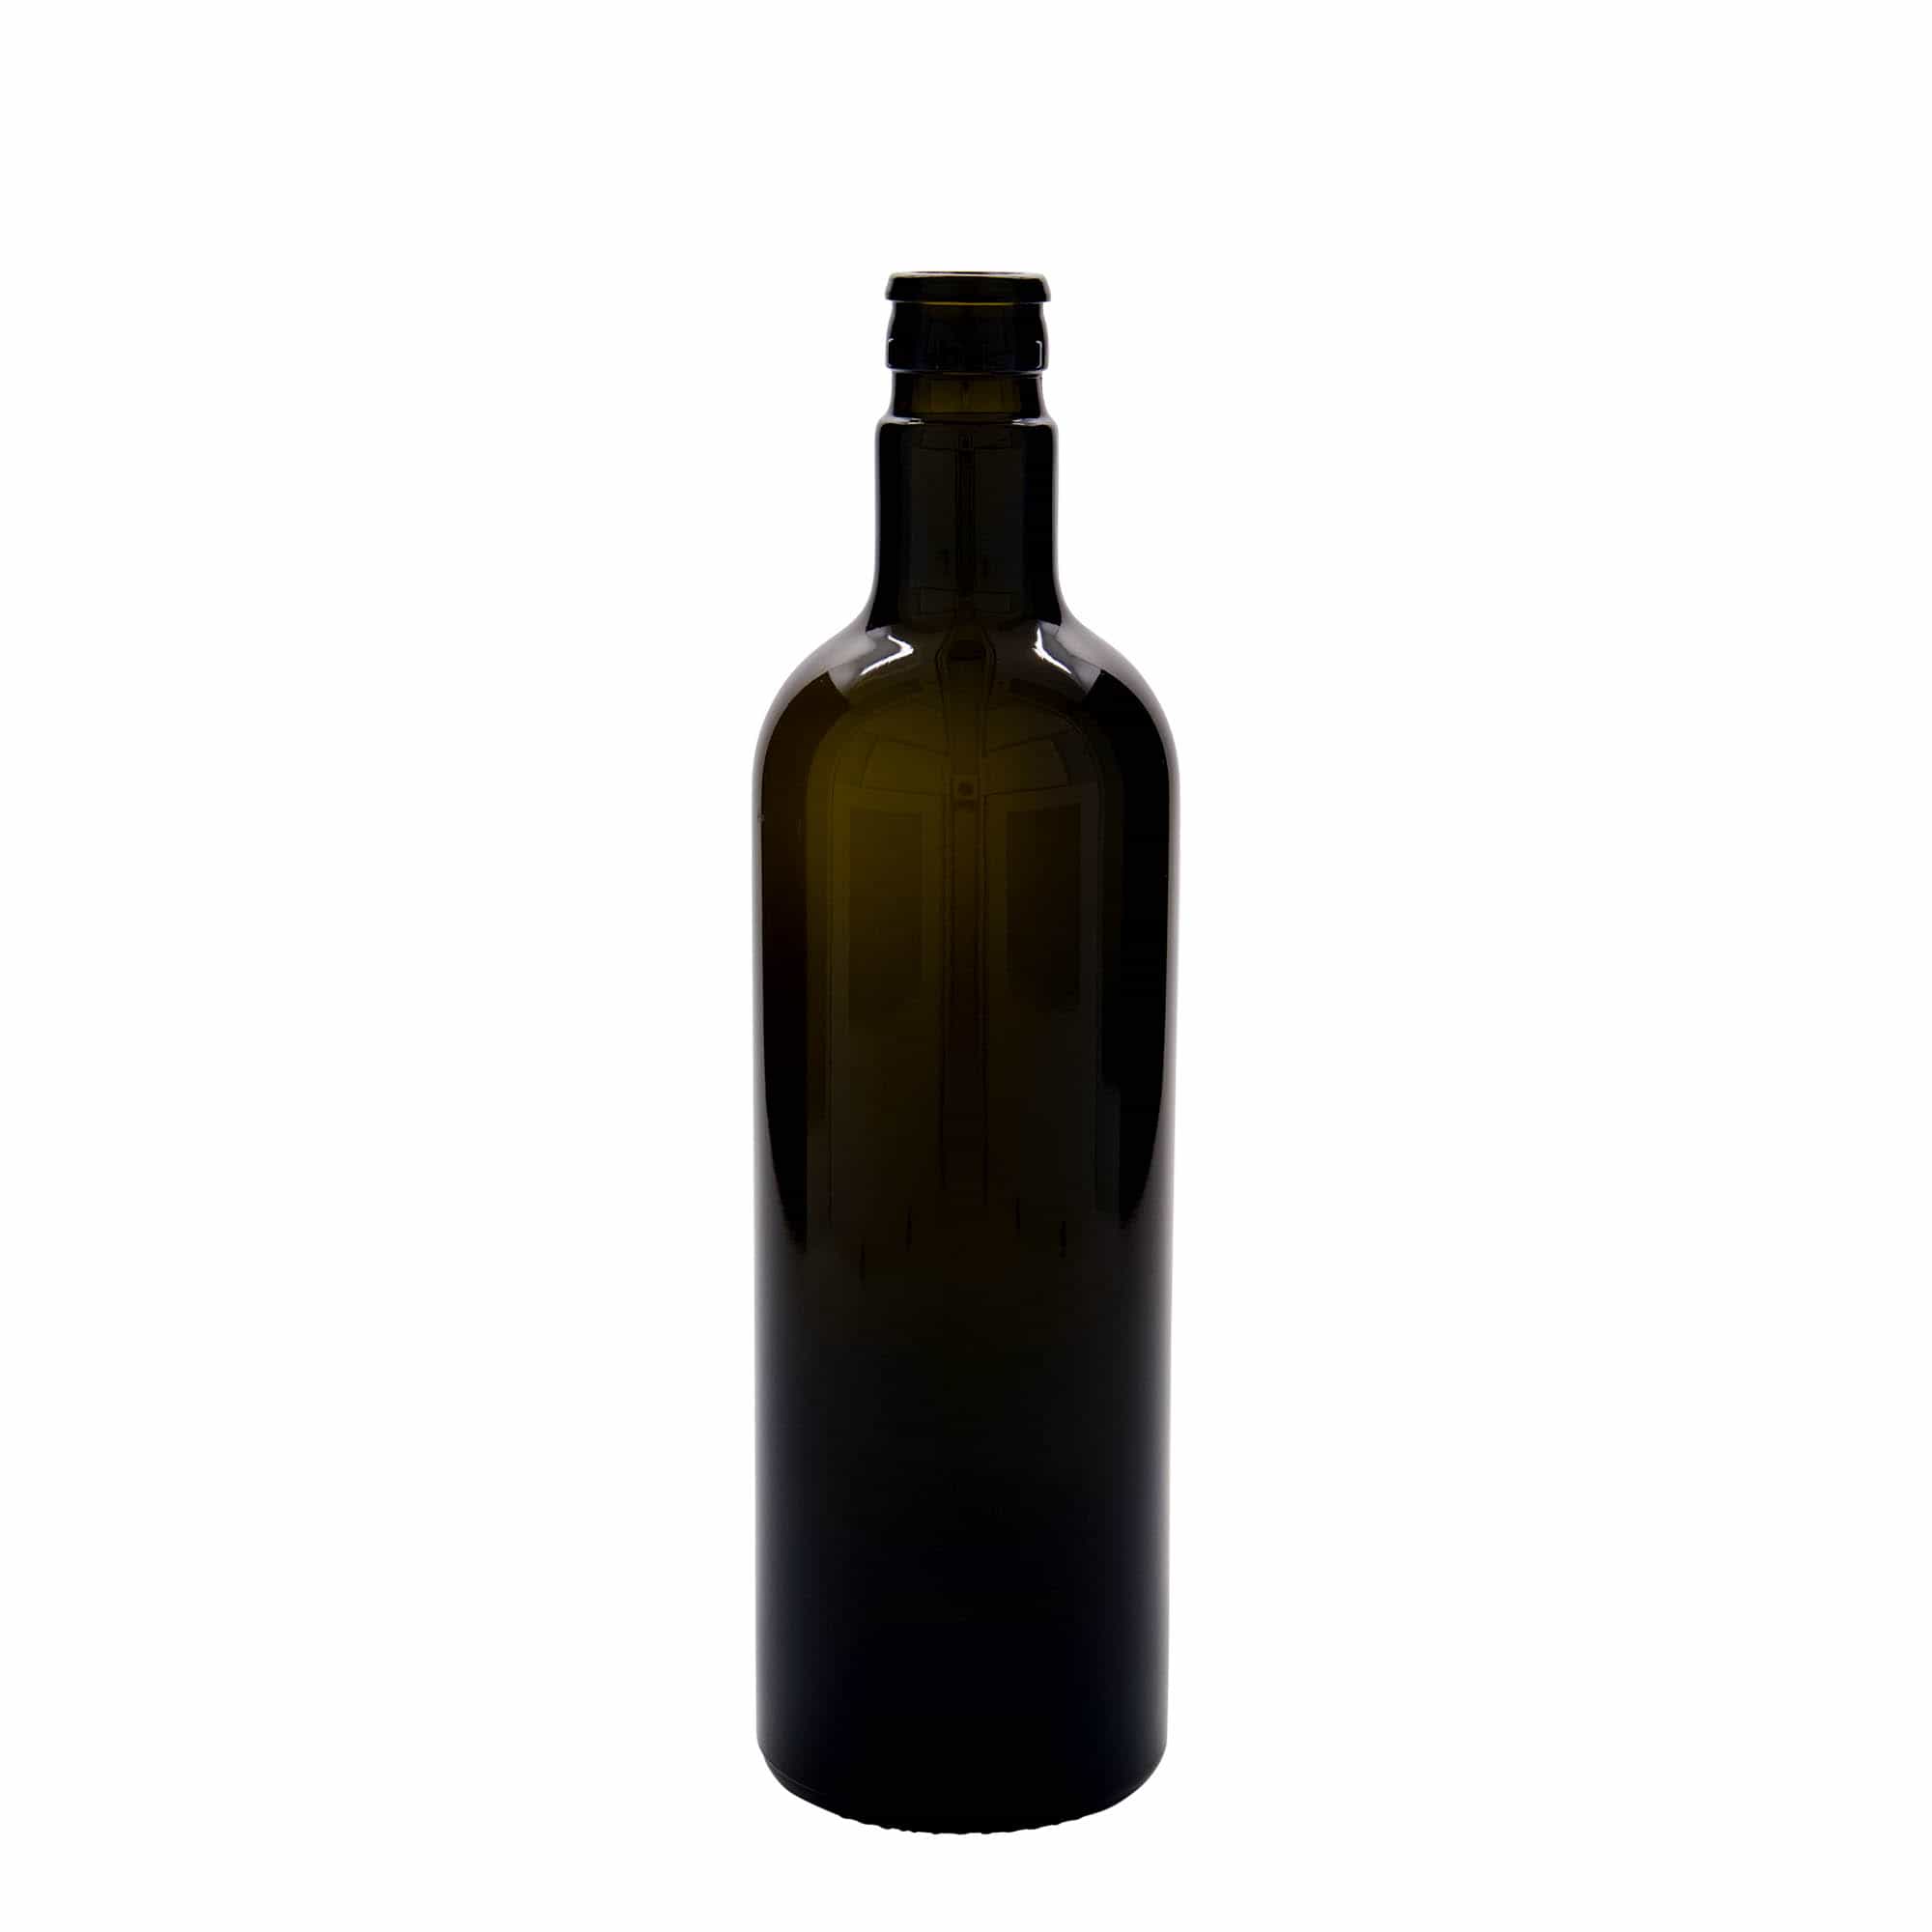 Azijn-/oliefles 'Willy New', 750 ml, glas, antiekgroen, monding: DOP